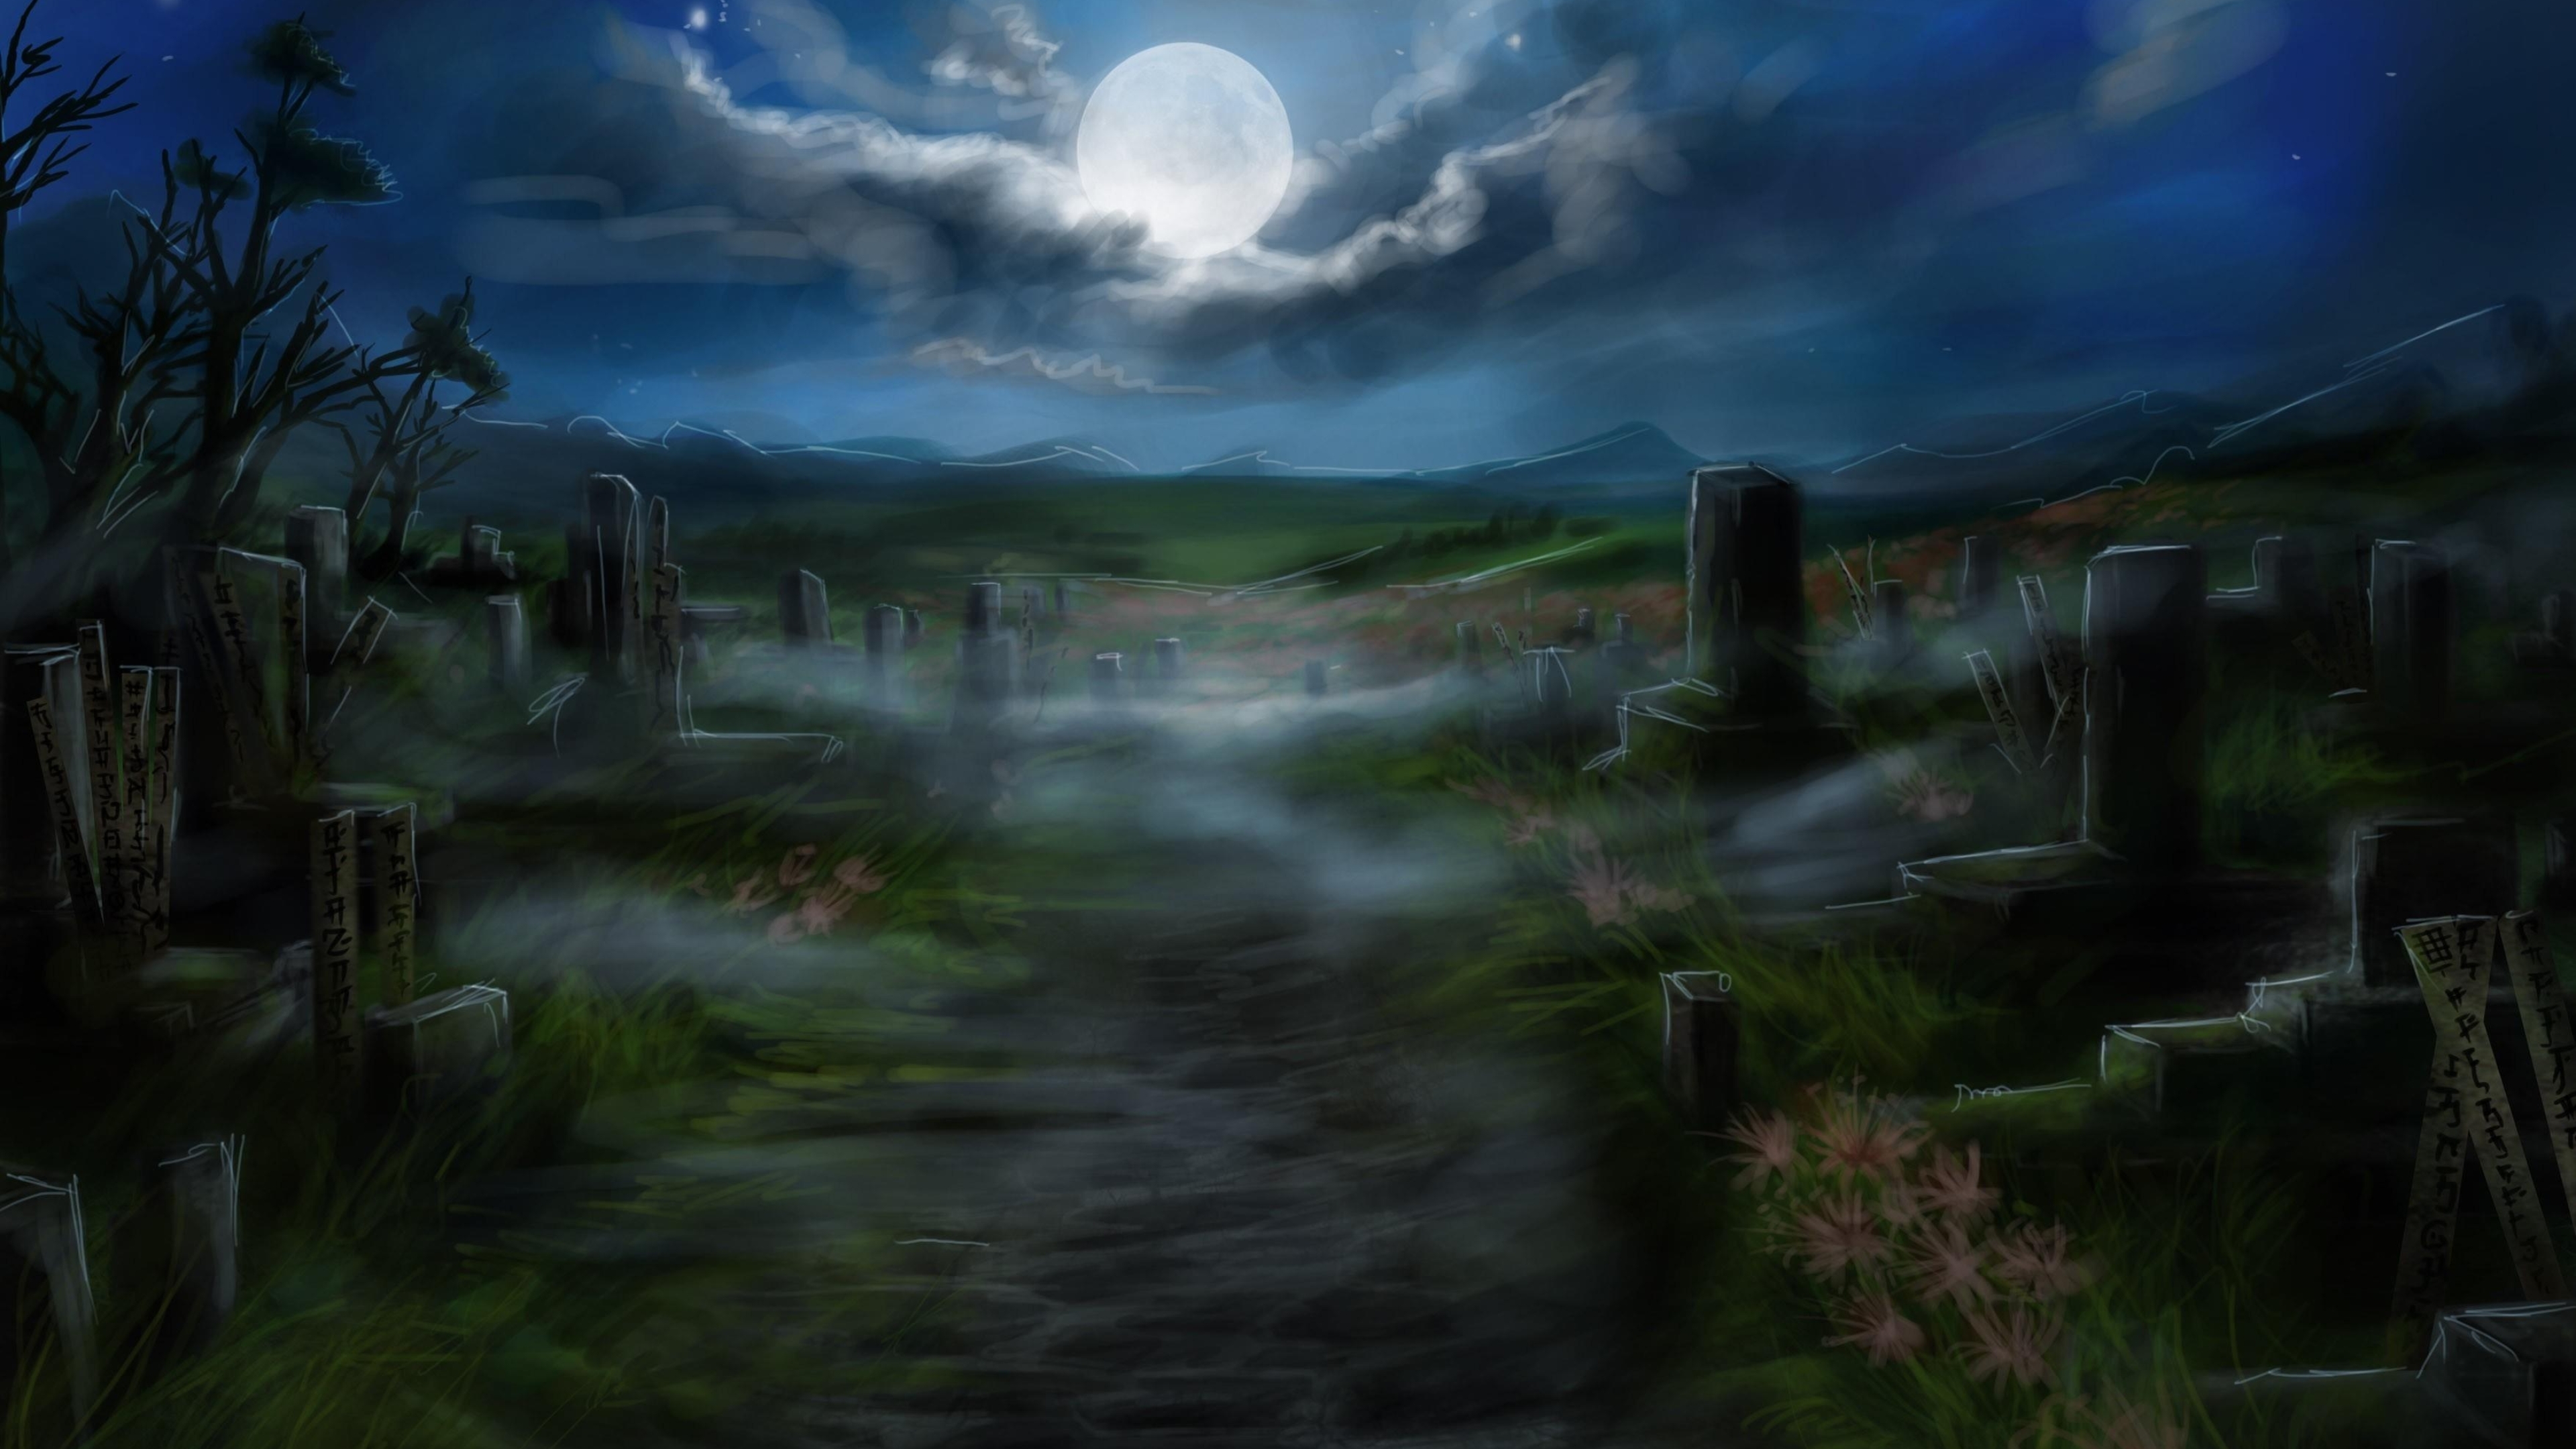 3. "Halloween Nail Art: Glow in the Dark Tombstones" - wide 2